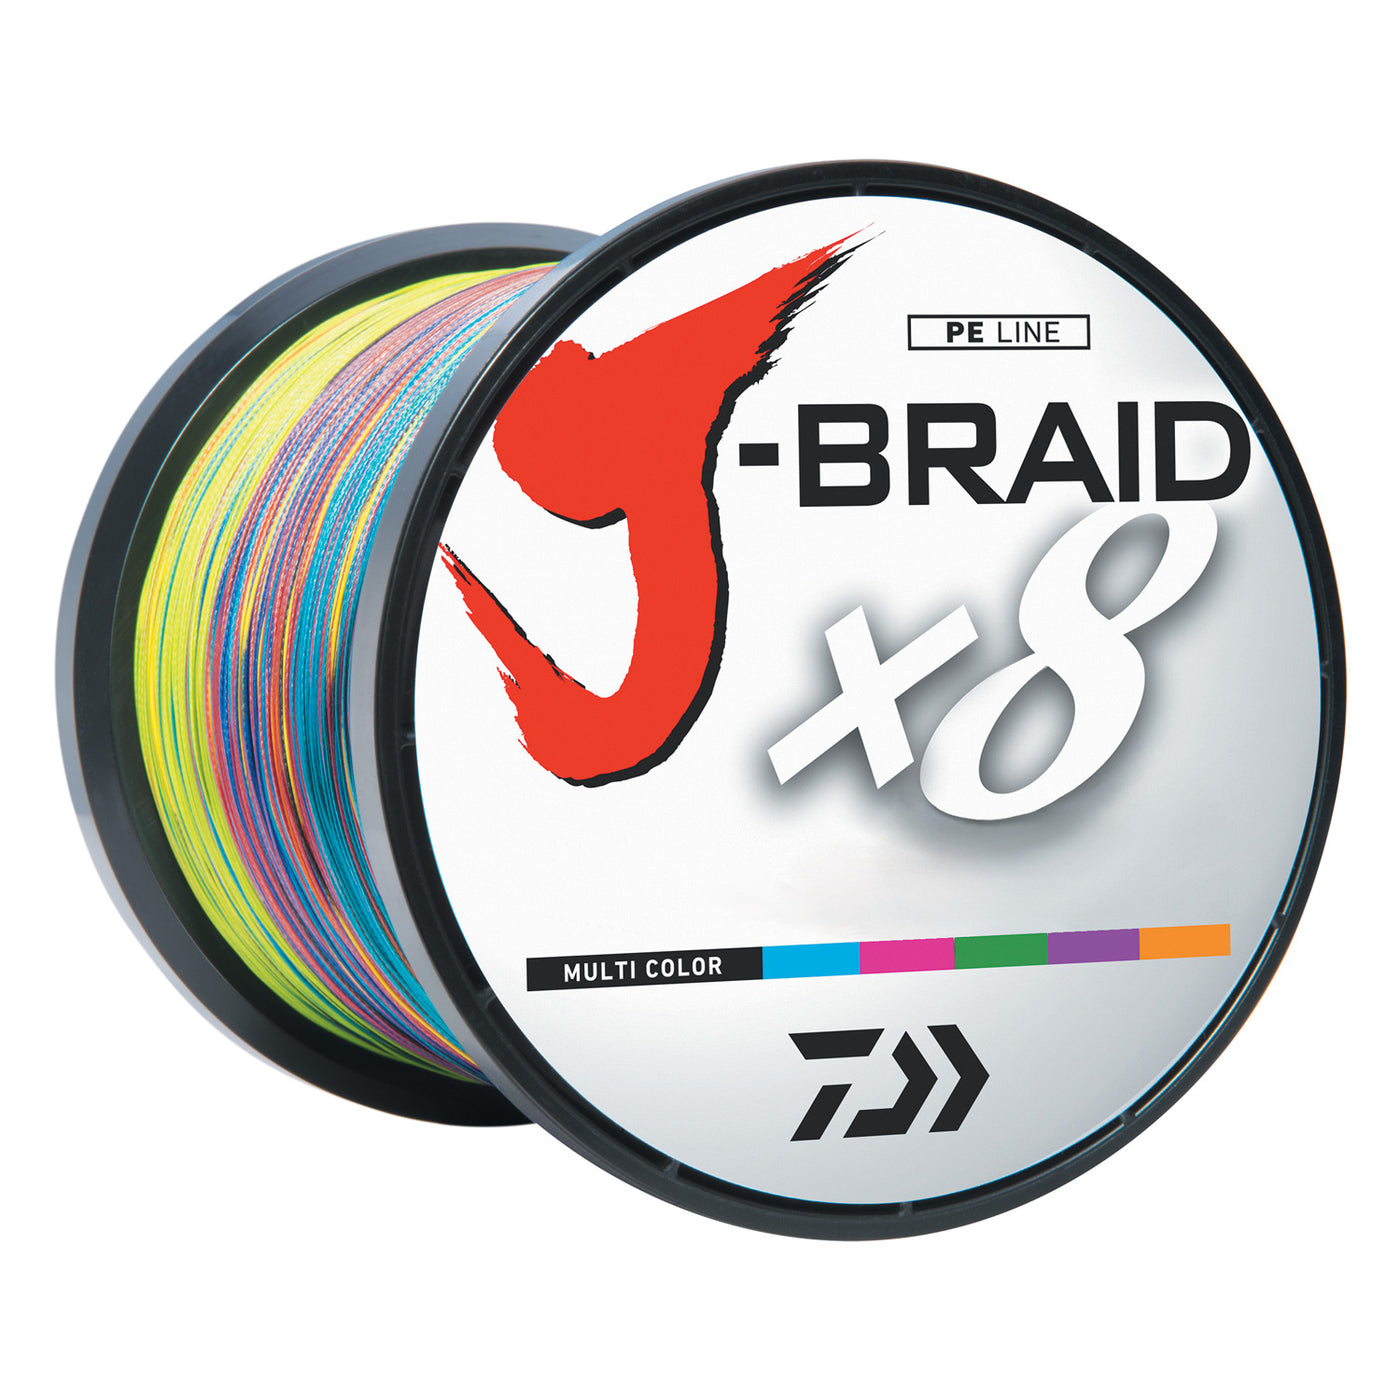 J BRAID GRAND Multicolor Braided Fishing Line PE 8 Fishing Line